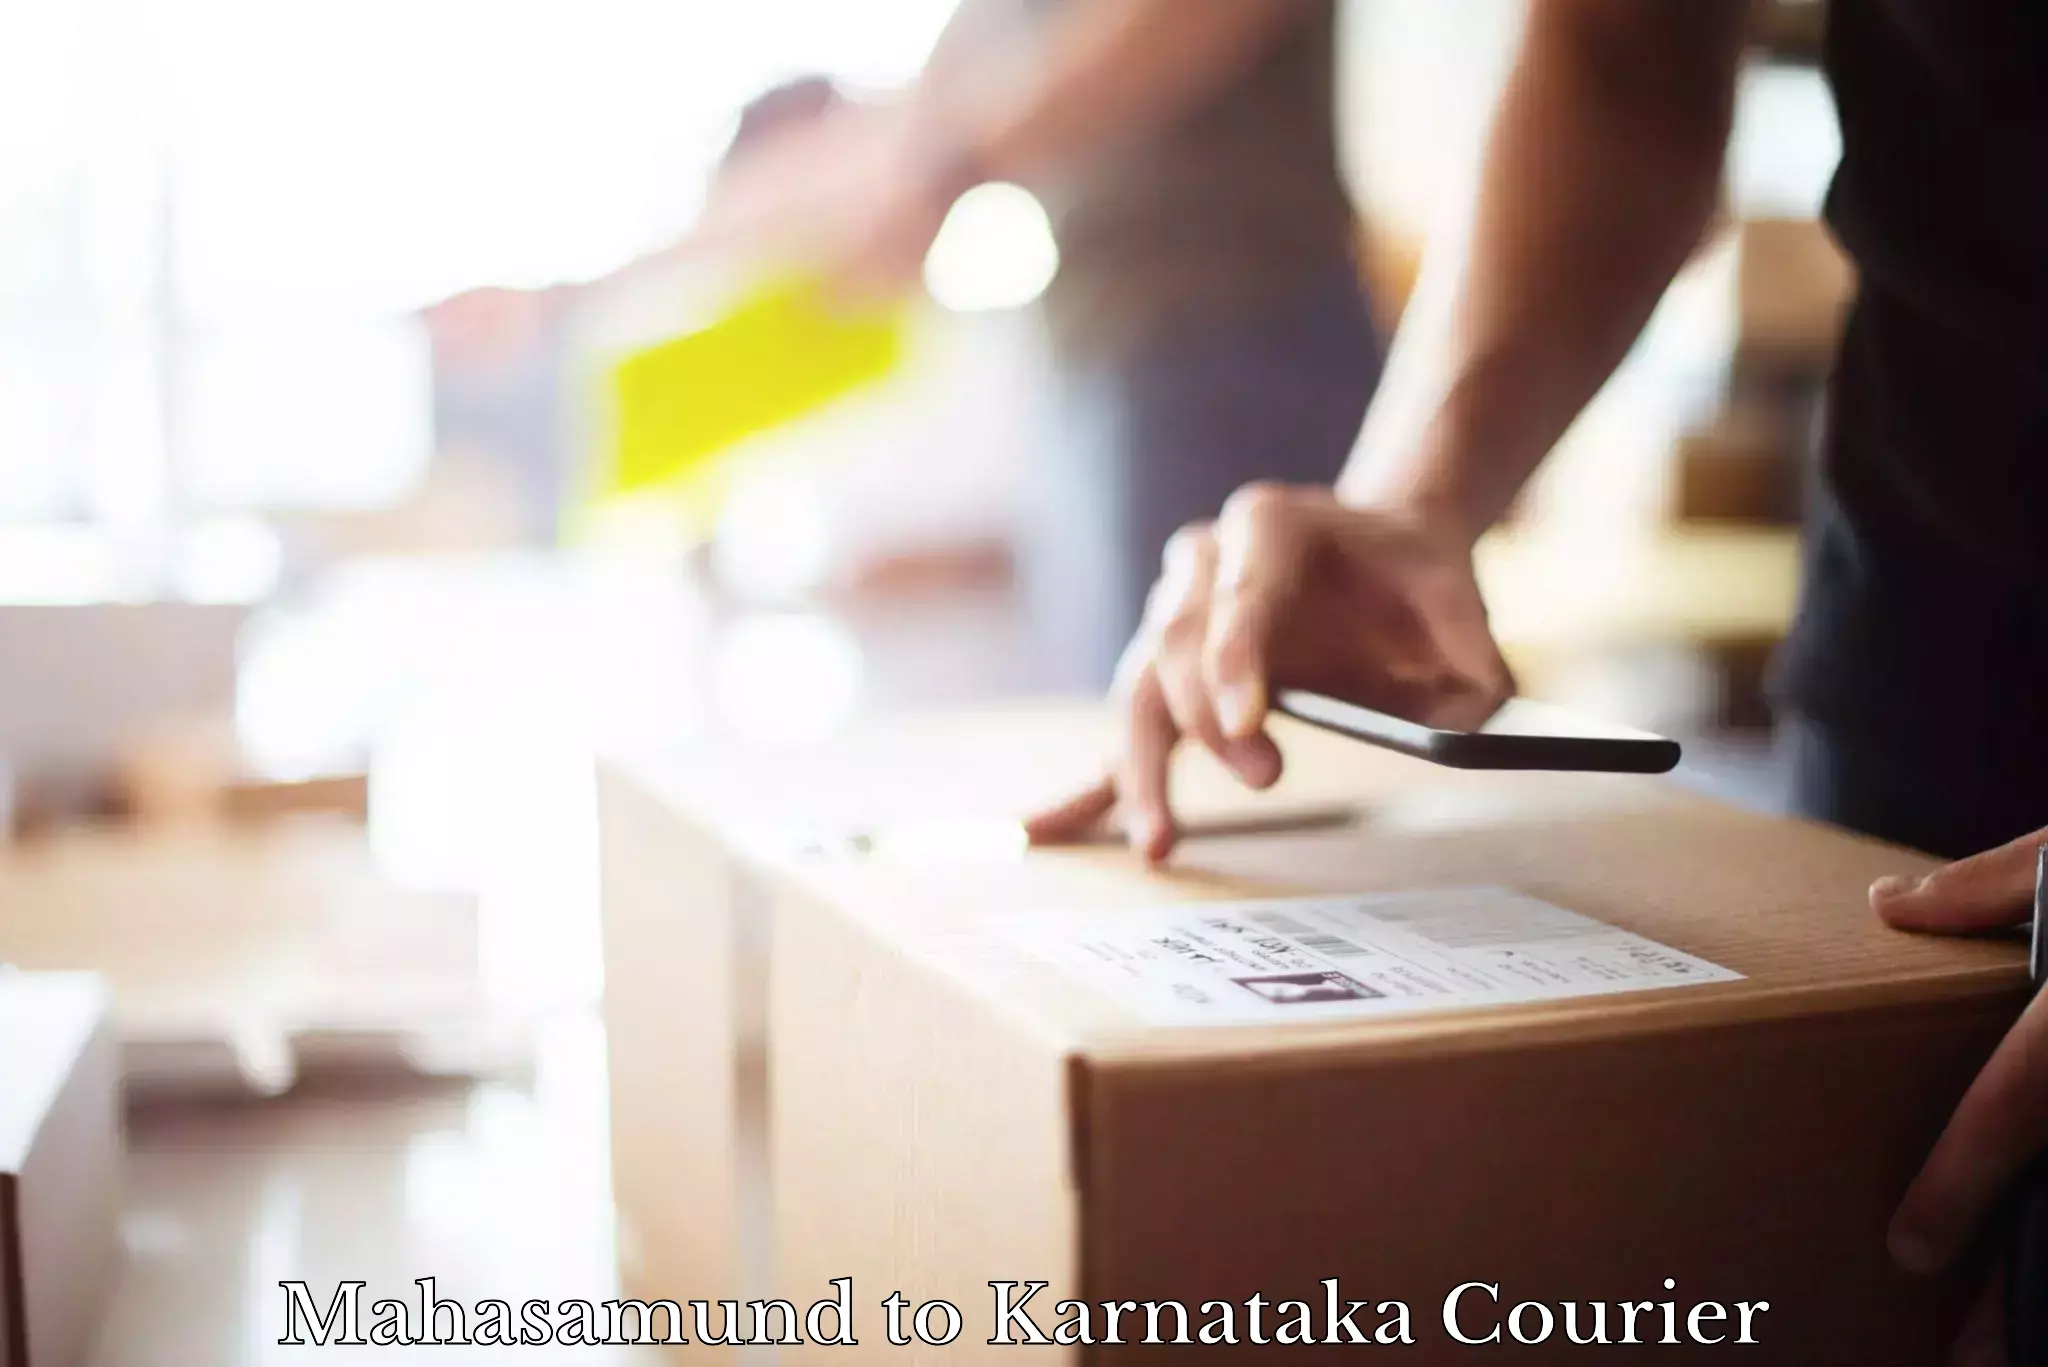 On-demand courier Mahasamund to Karnataka